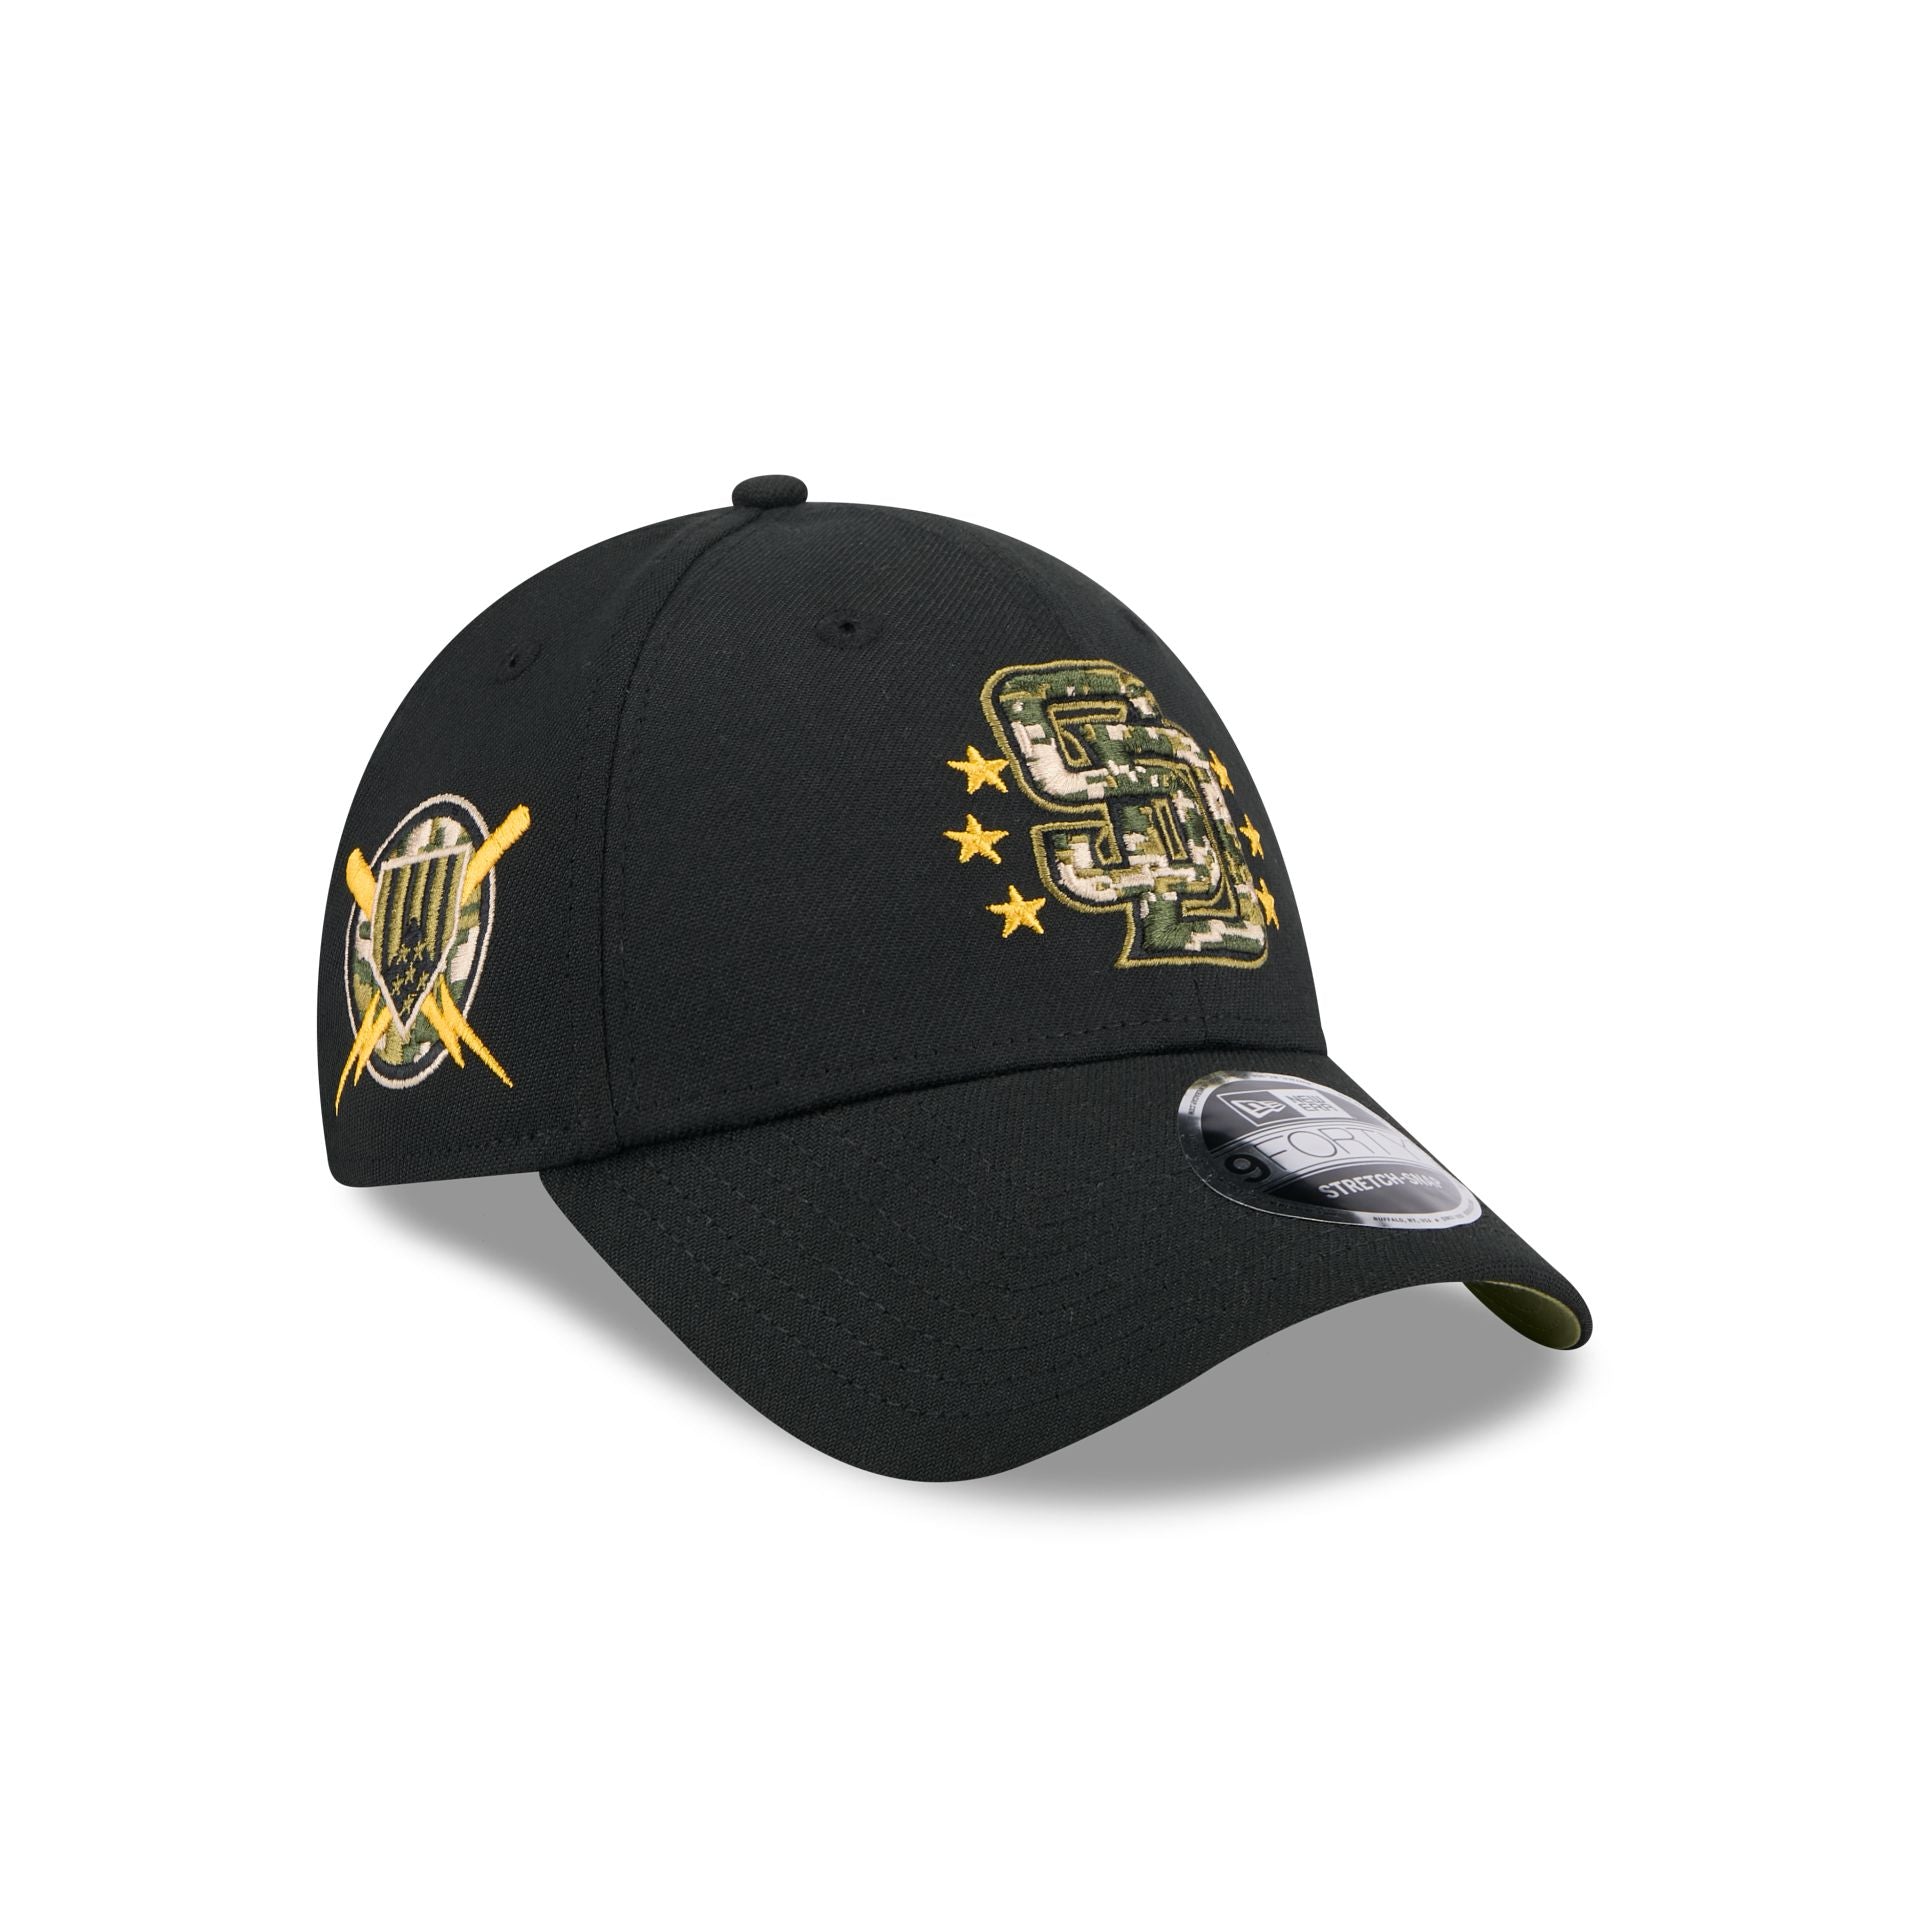 Kid's Hats and Caps – New Era Cap